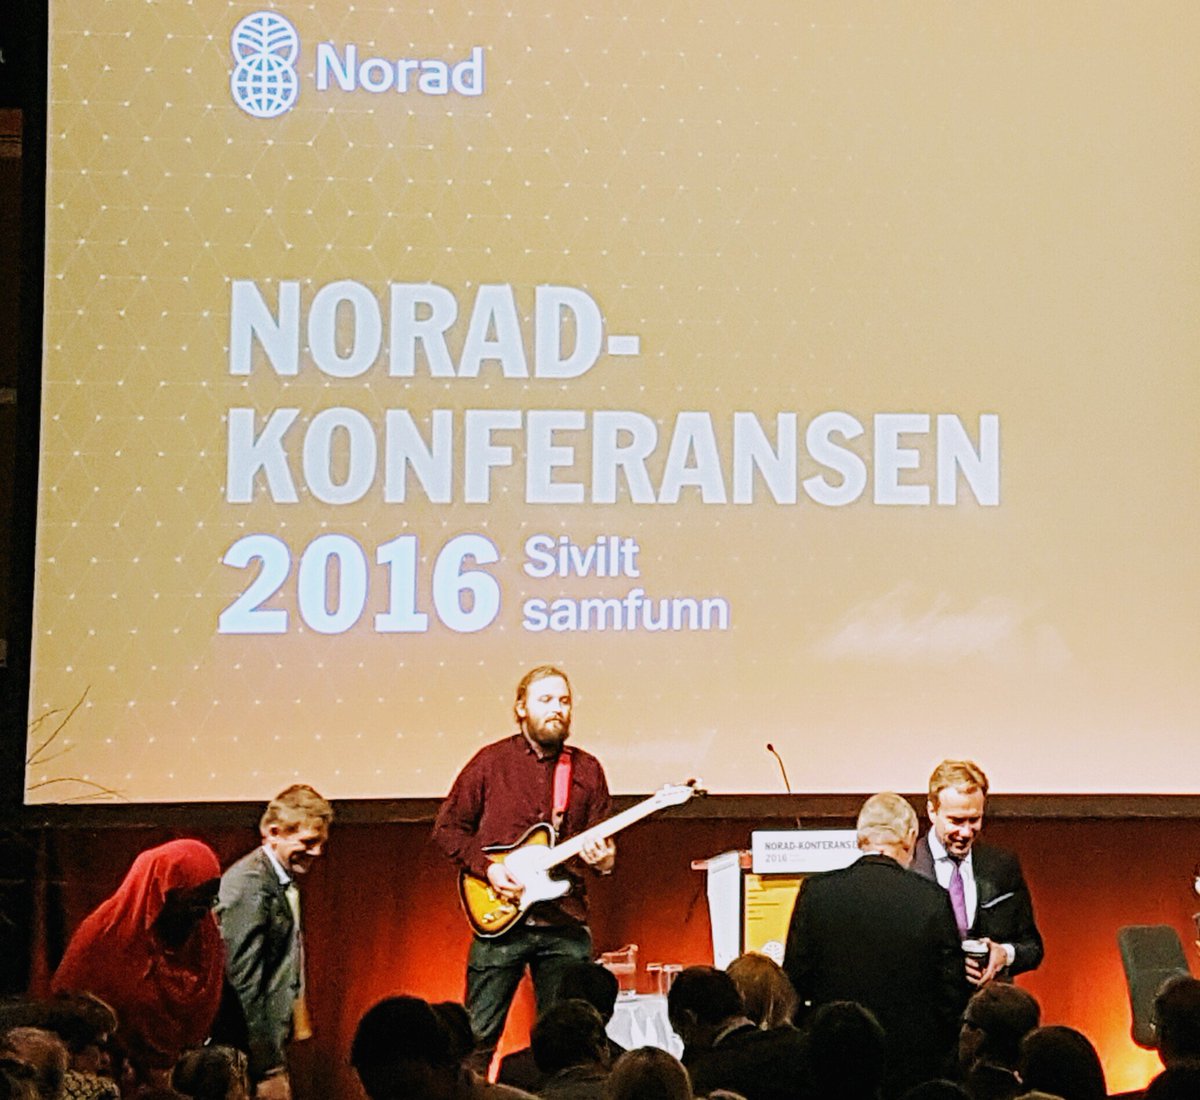 Sivilisert gitarist åpner NORADkonferansen 2016 #noradkonf @noradno